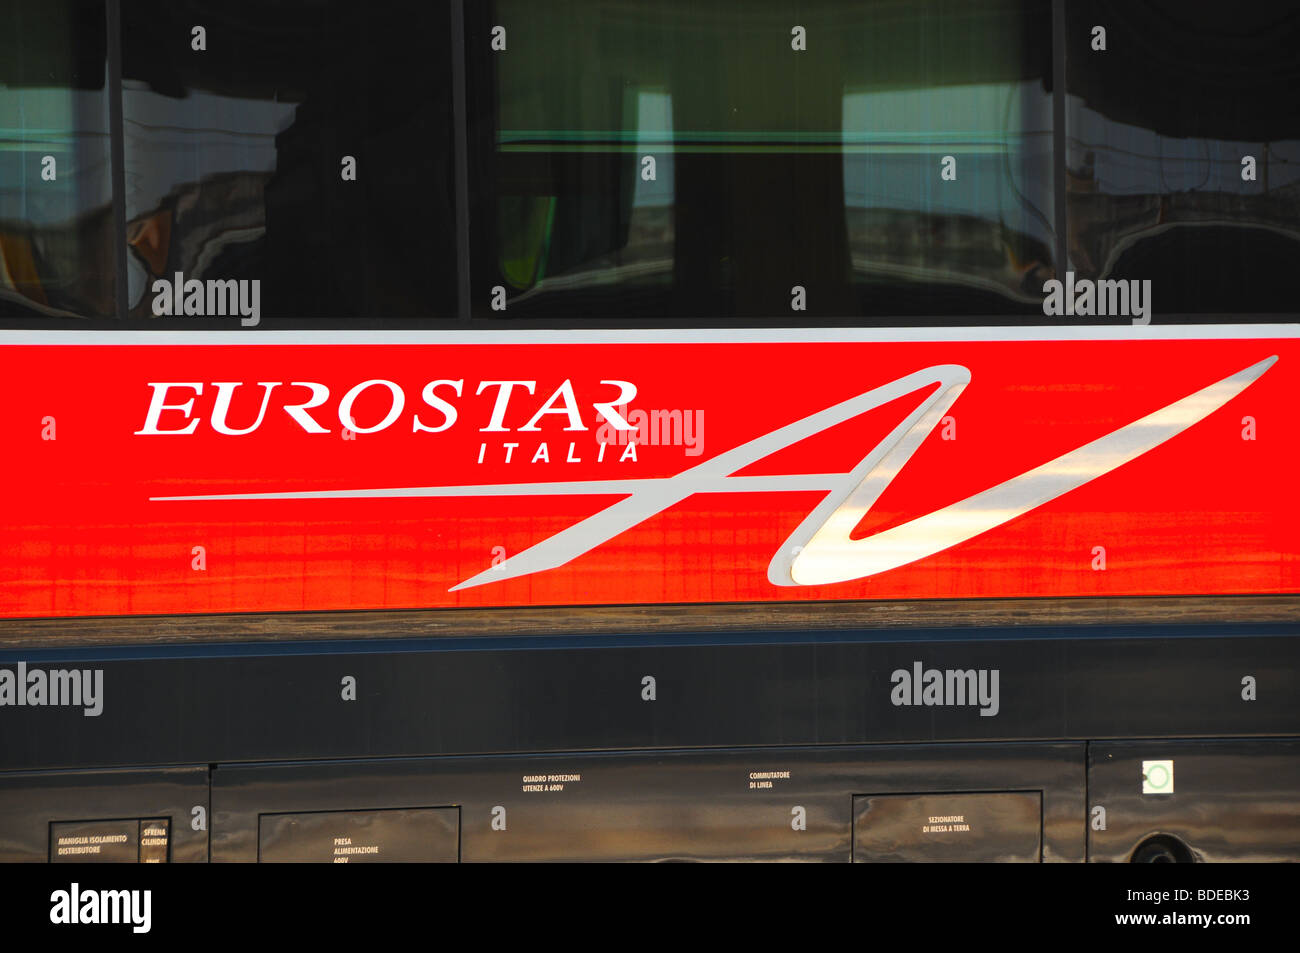 EUROSTAR ITALIA fast train, Bologna, Italy Stock Photo